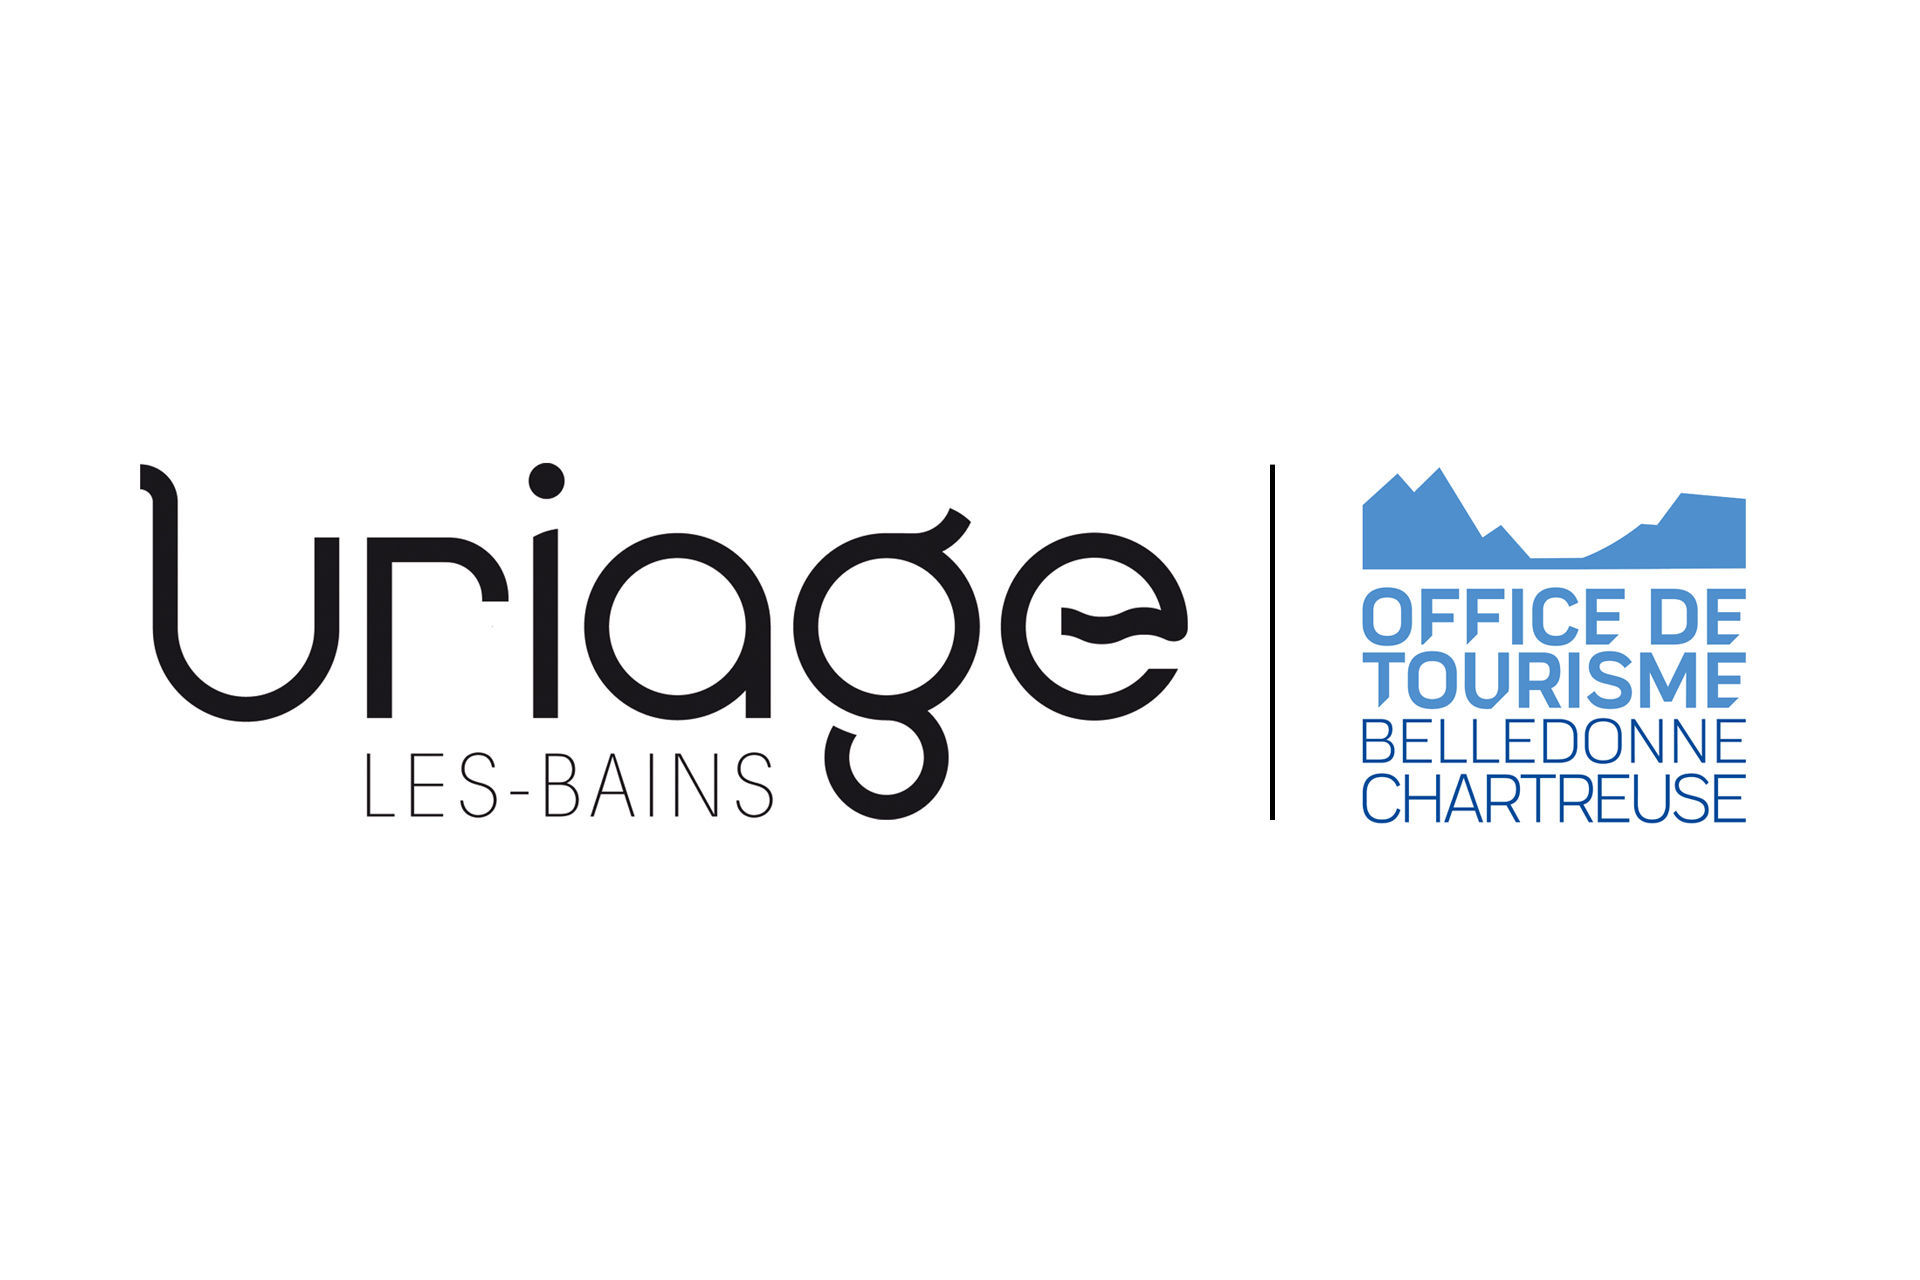 Chamrousse partenaire Uriage-les-Bains Office de tourisme Belledonne Chartreuse station ski montagne grenoble isere alpes france - © Uriage - OTBC